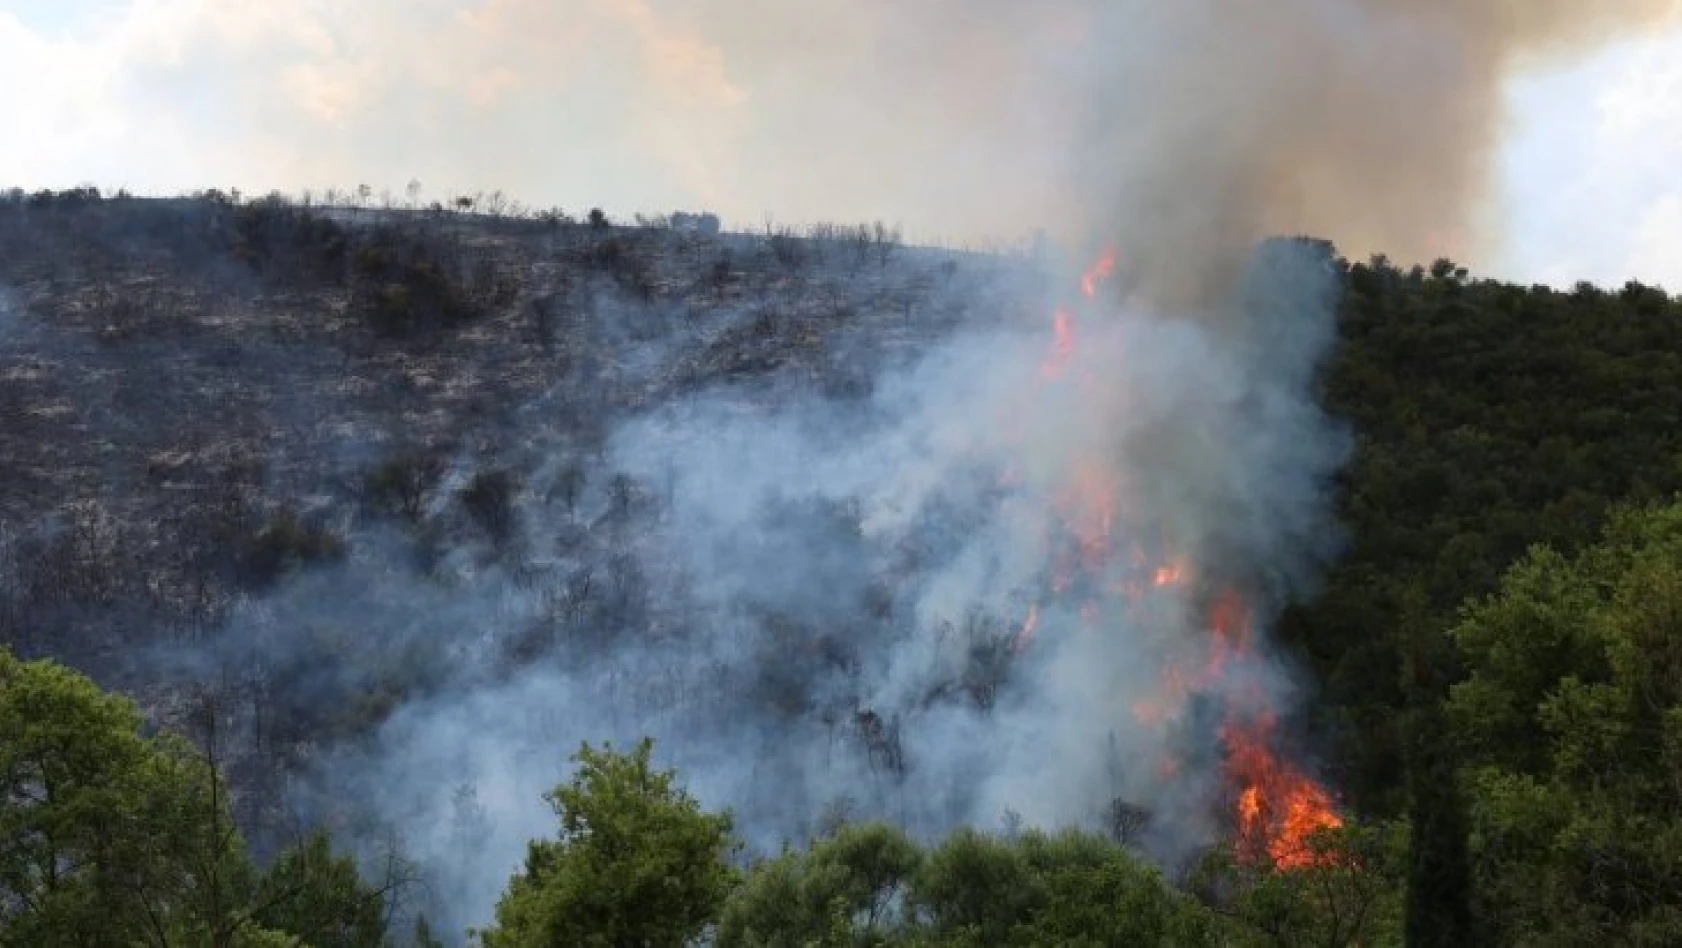 Kocaeli'de ormanlık alanda çıkan yangına müdahale sürüyor